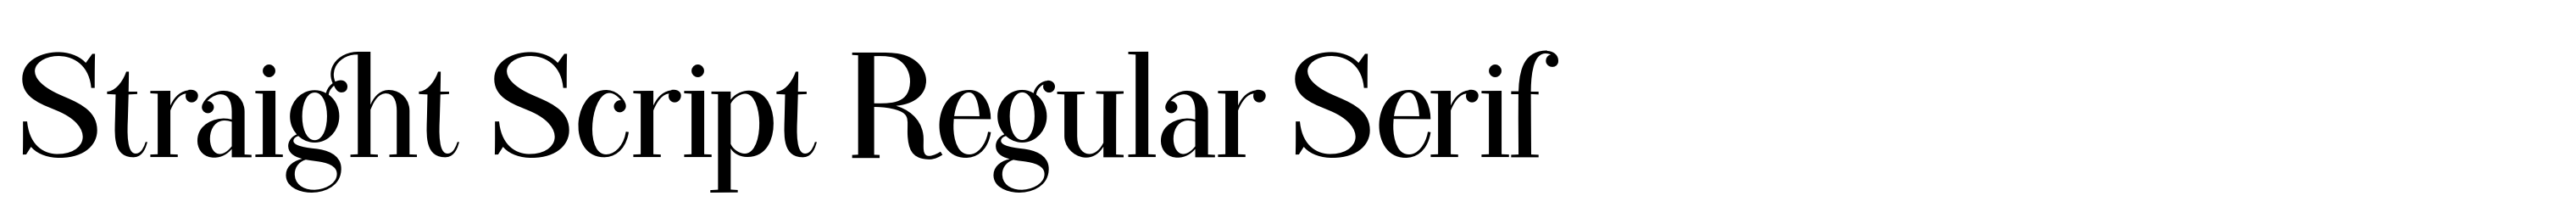 Straight Script Regular Serif